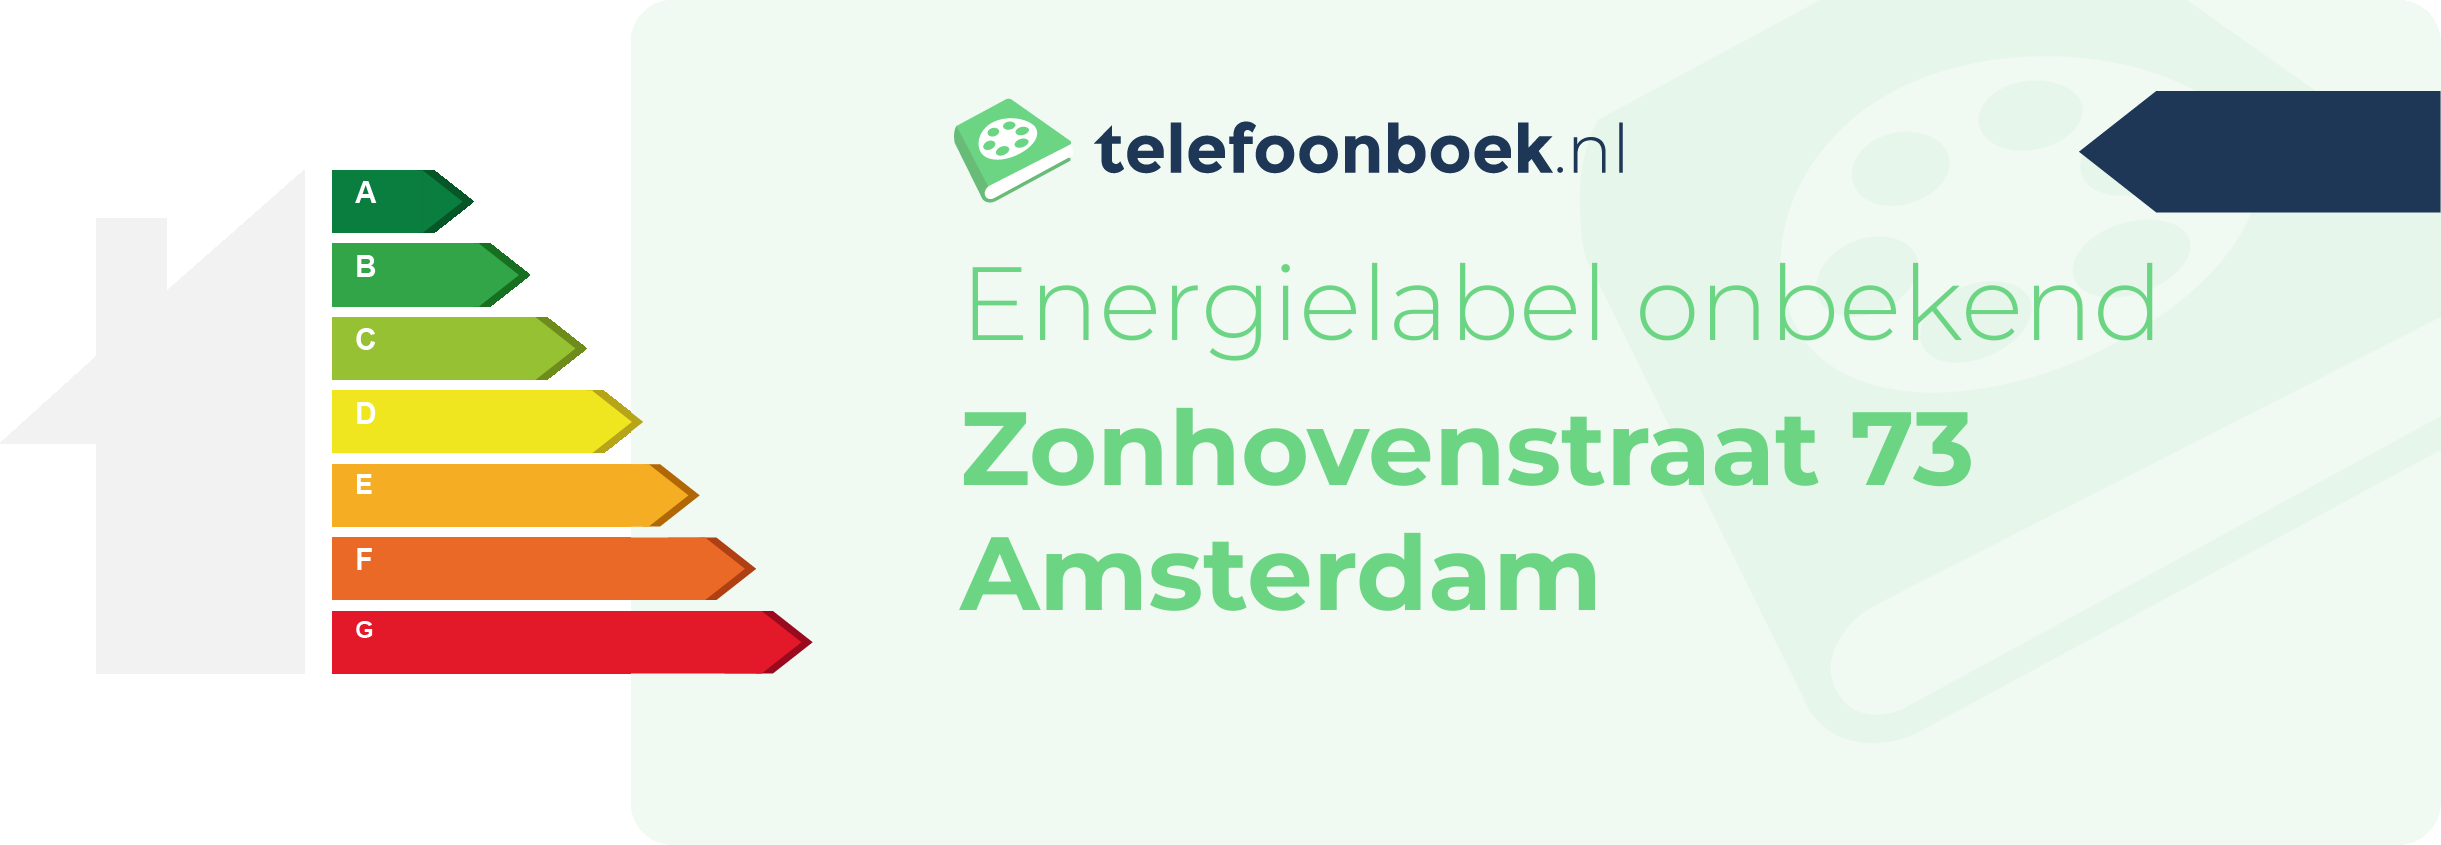 Energielabel Zonhovenstraat 73 Amsterdam